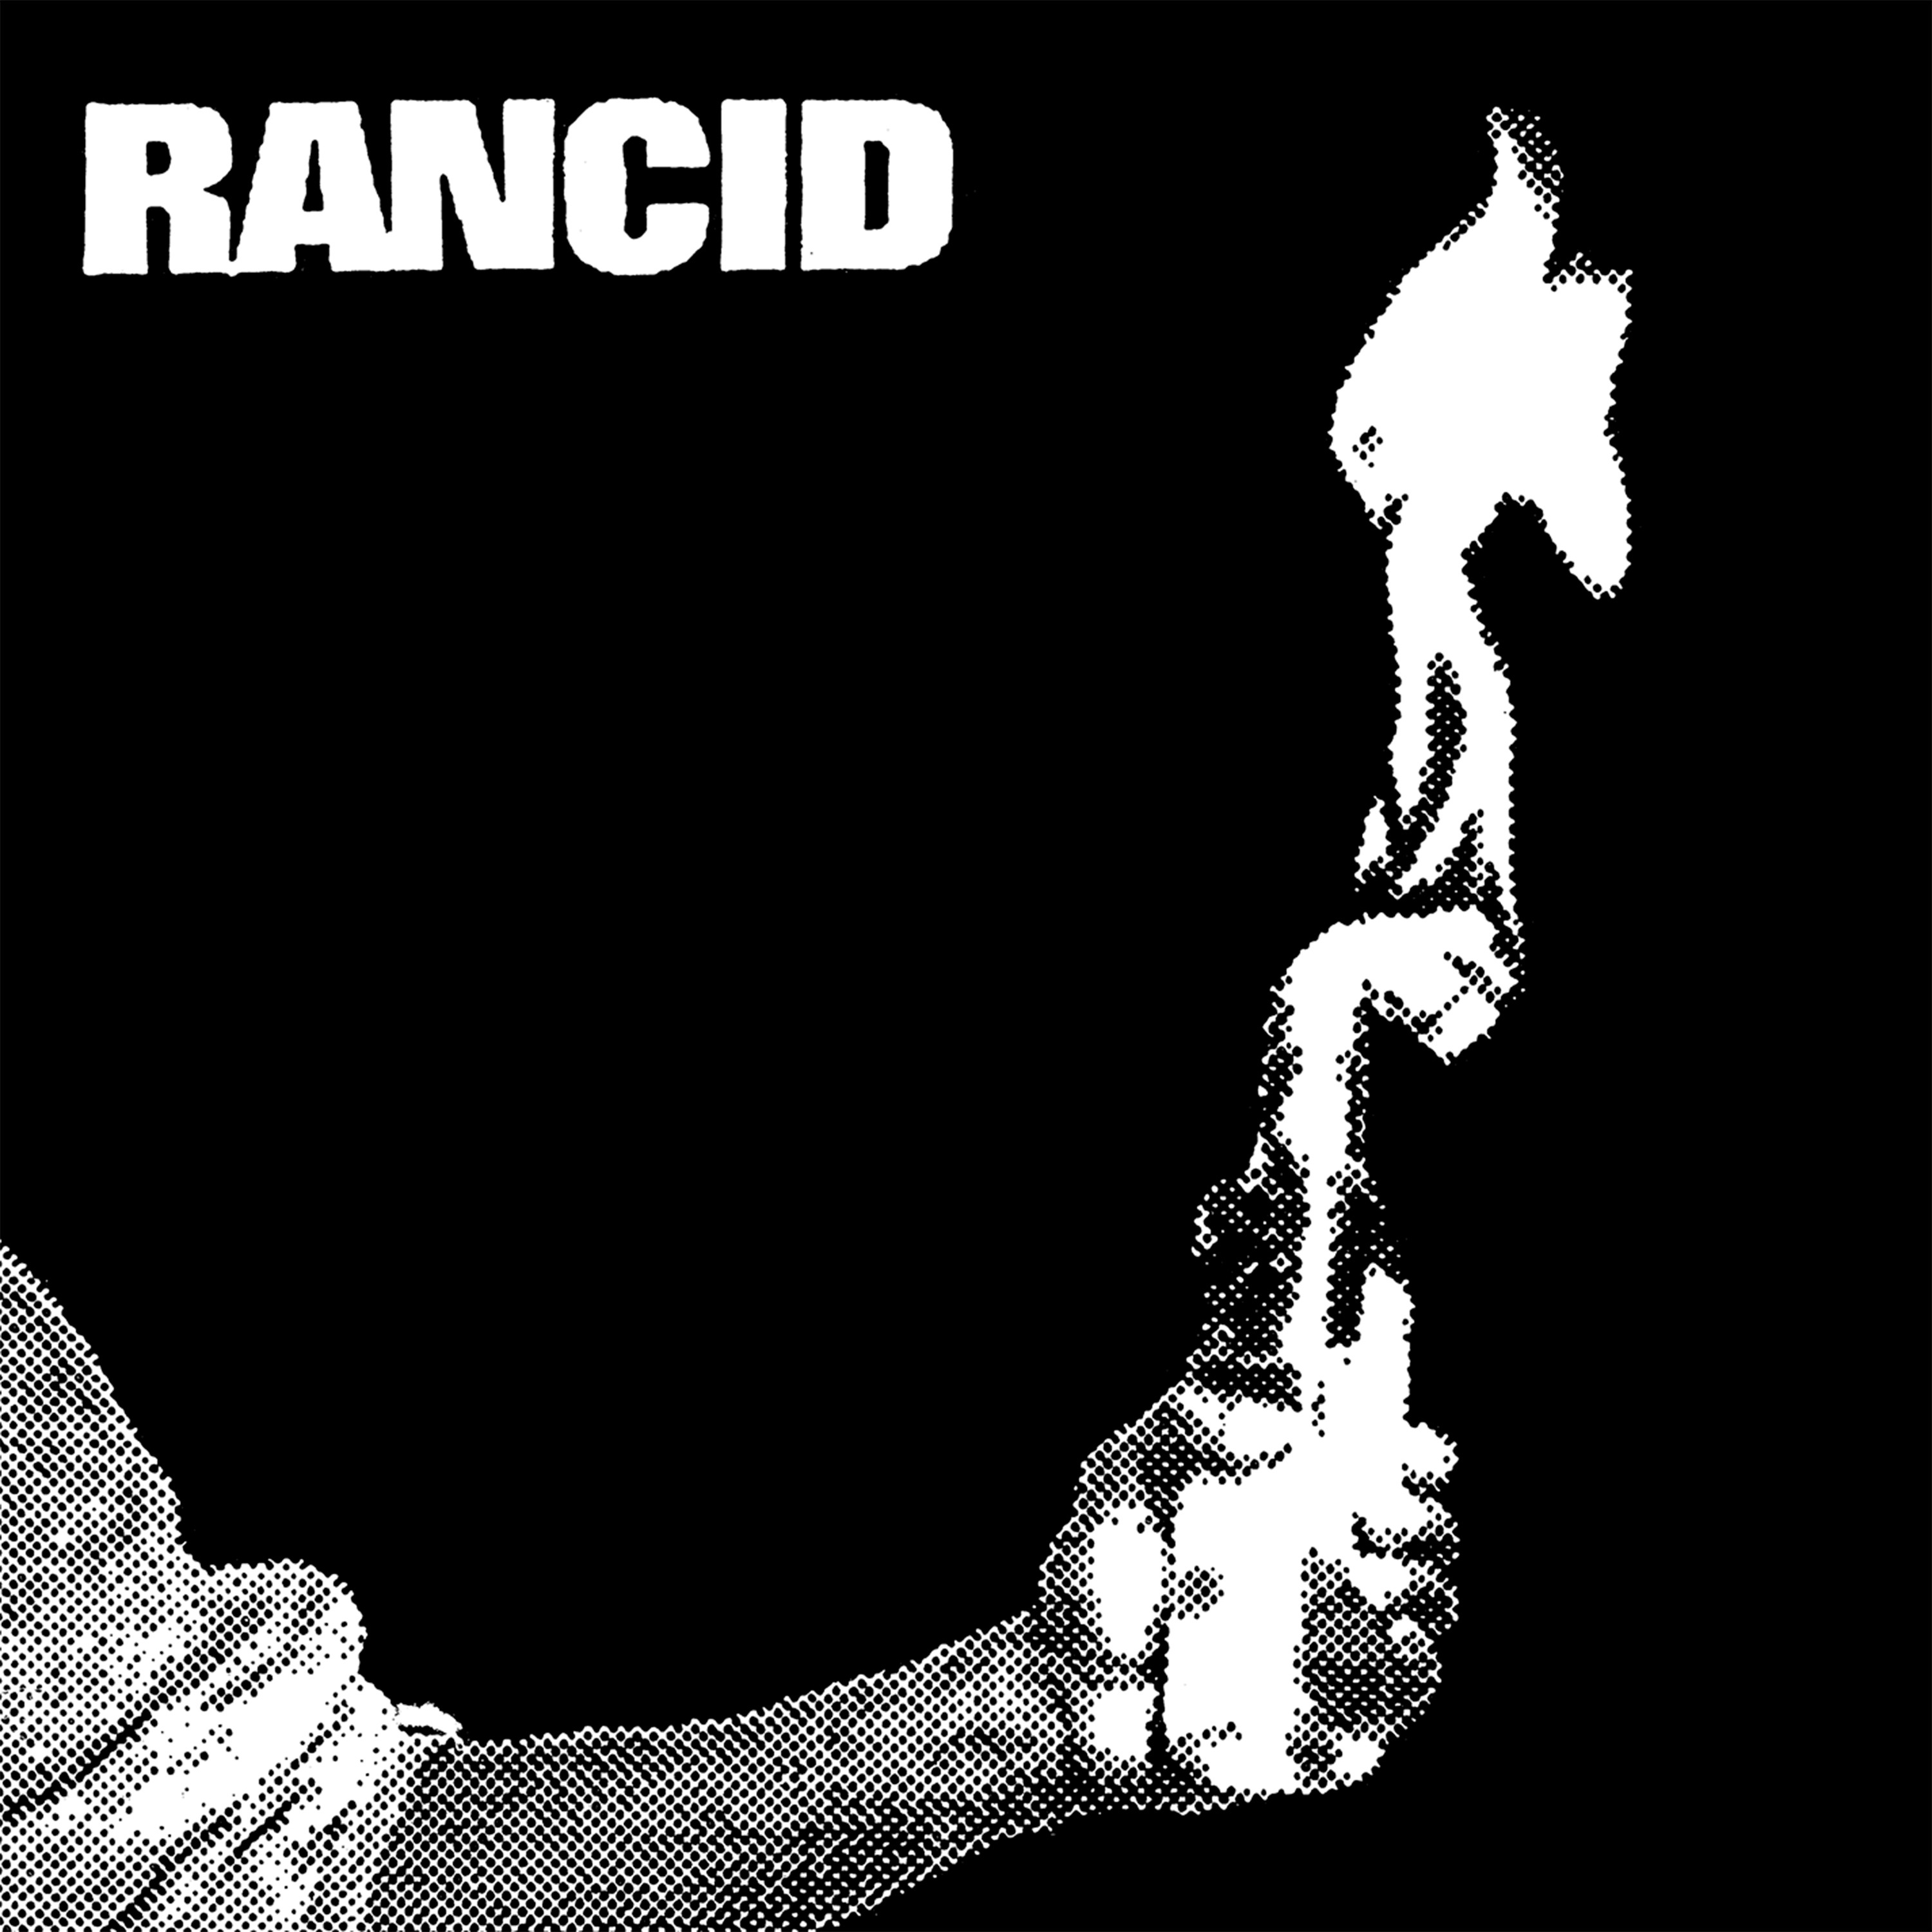 Rancid - Rancid EP (92)